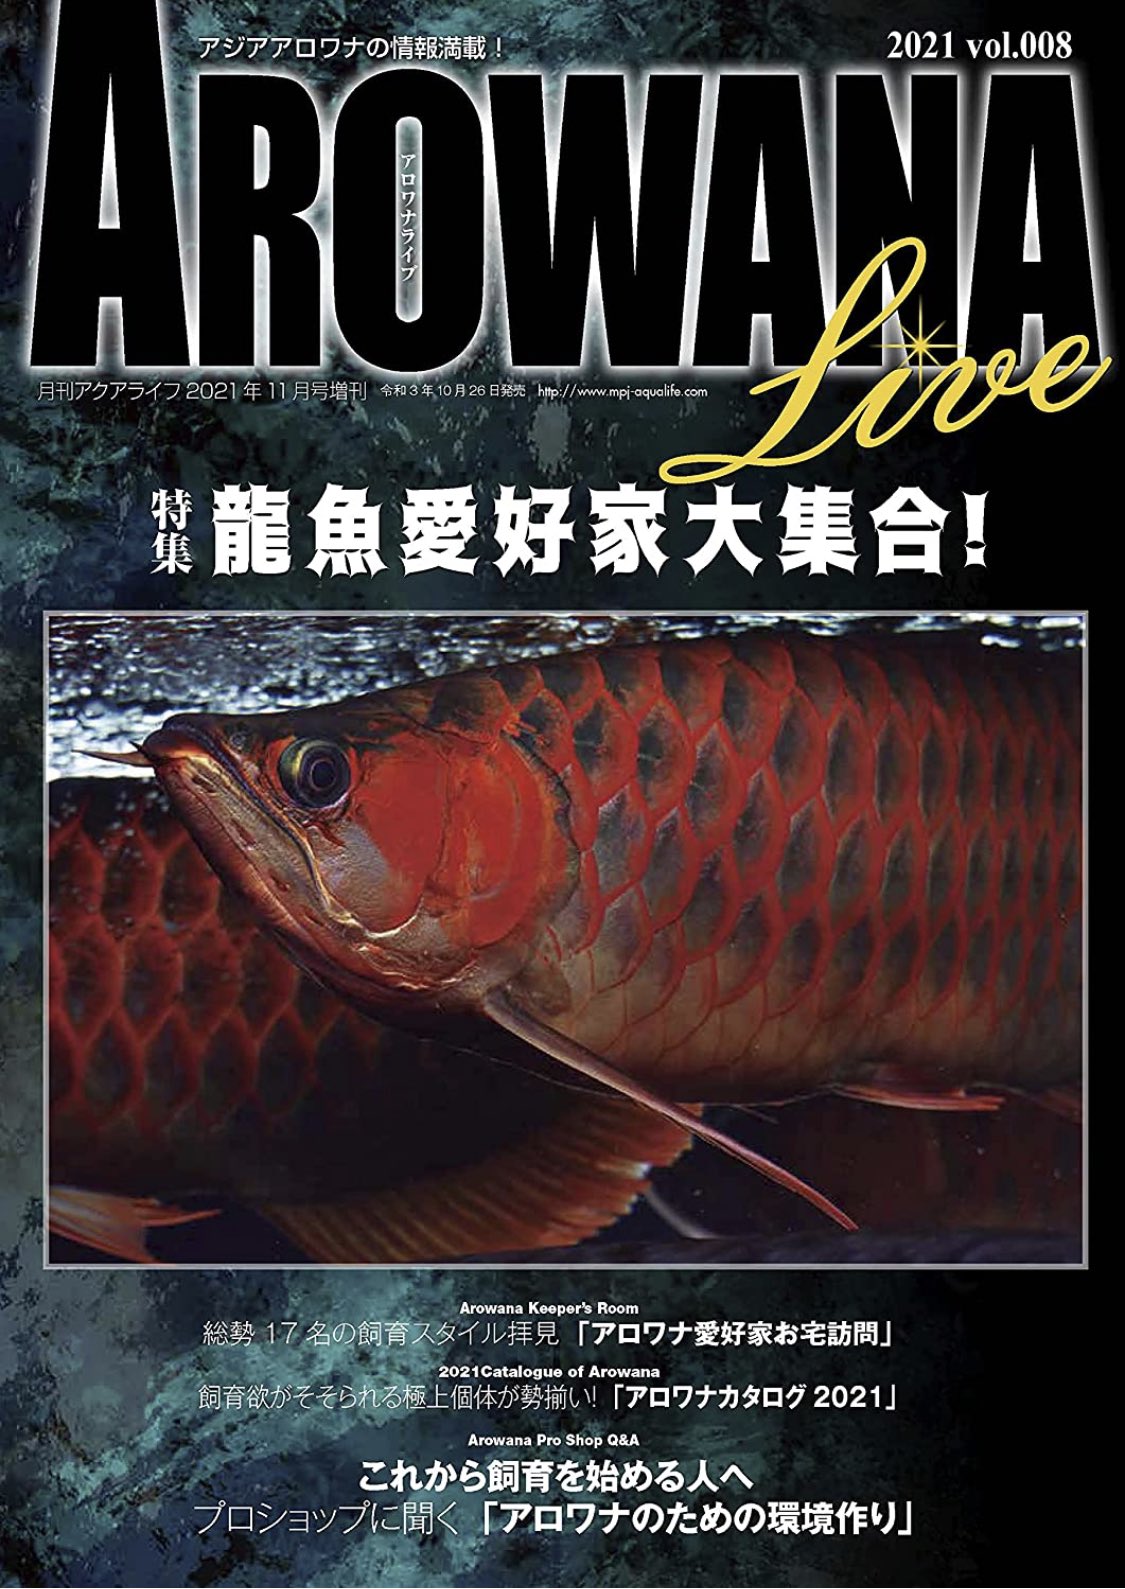 フィッシュマガジン fishmagazine 2001年7月 No424